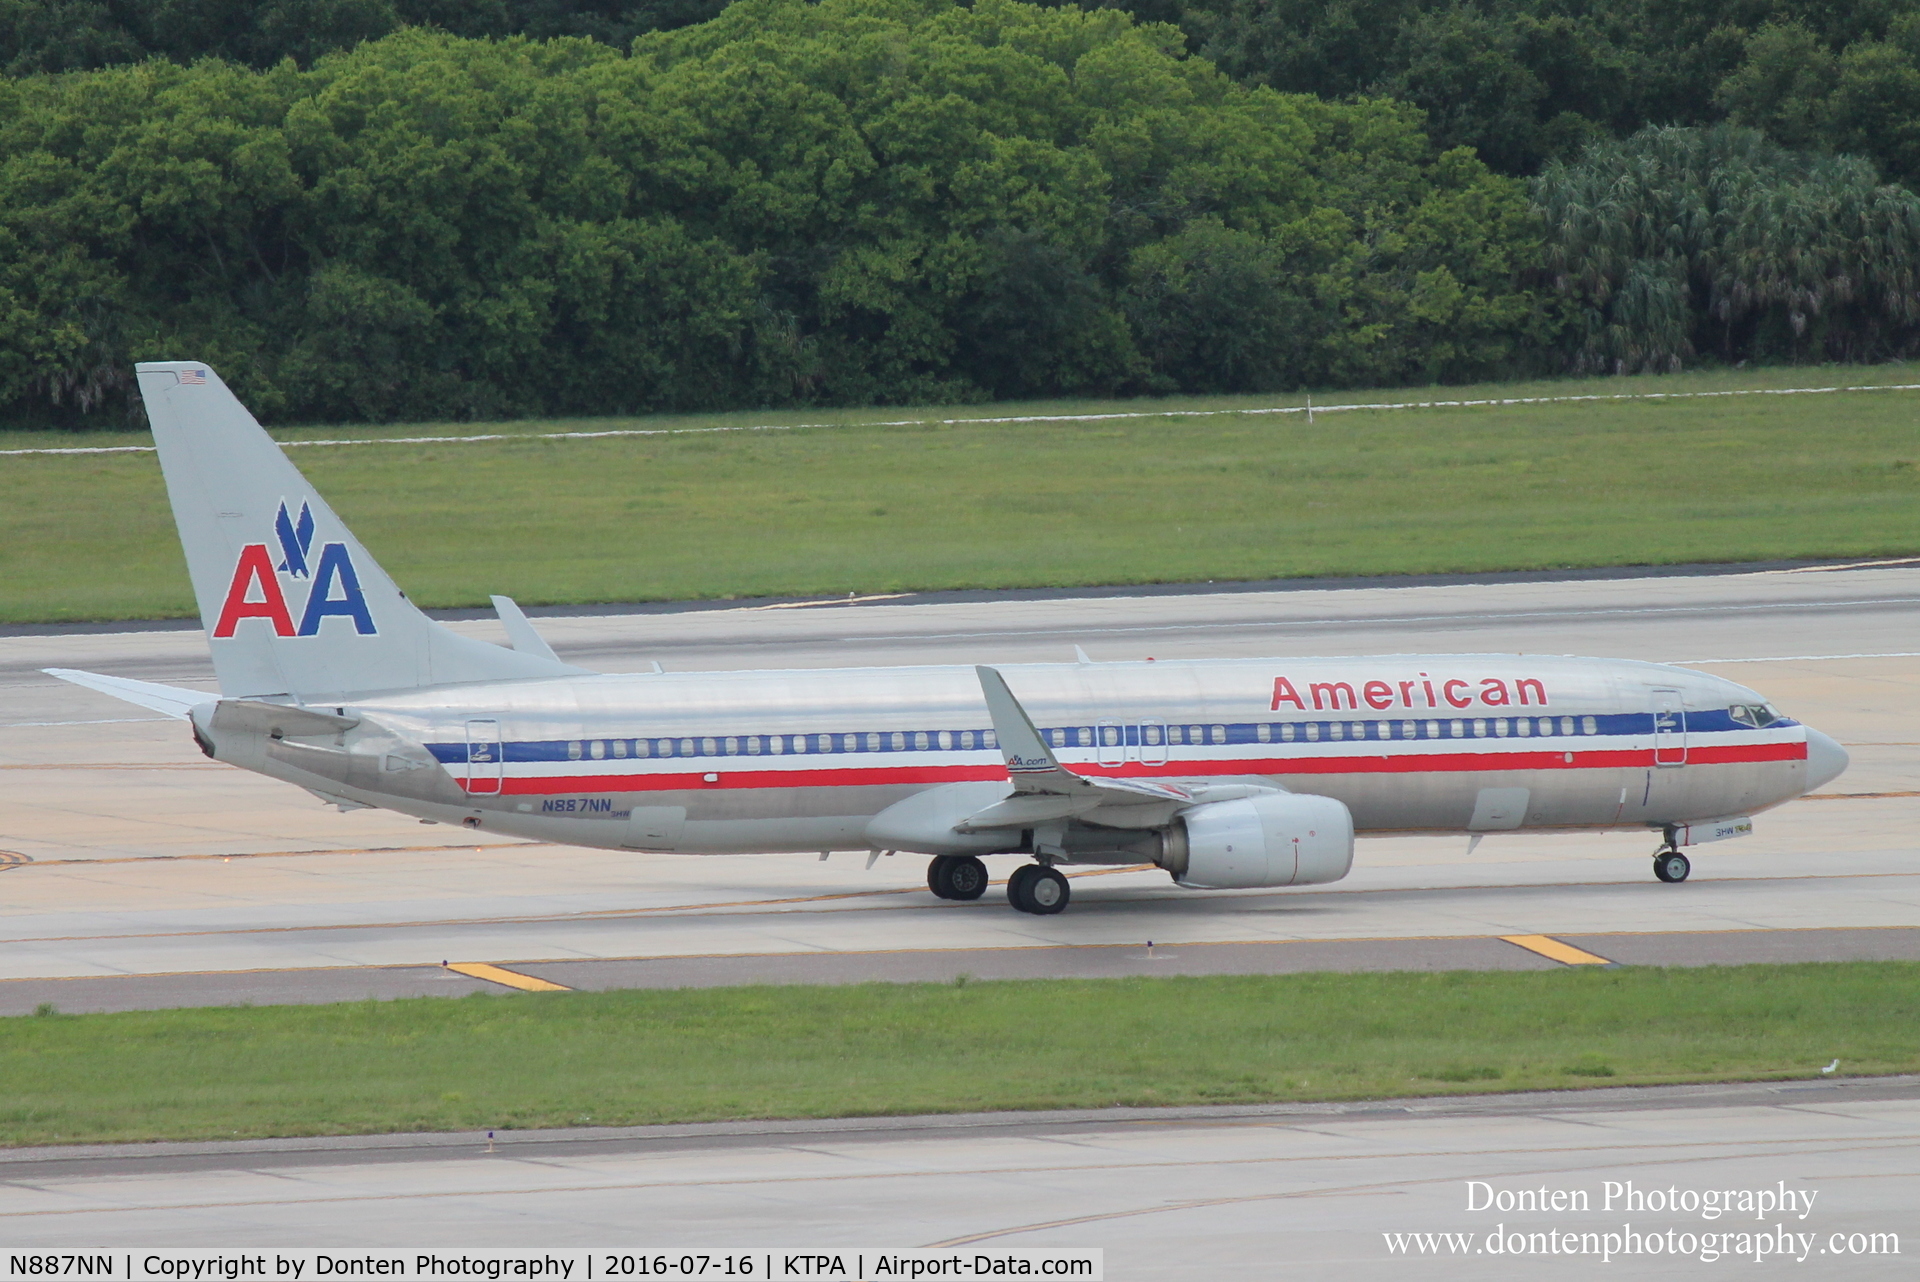 N887NN, 2012 Boeing 737-823 C/N 31141, American Flight 1394 (N887NN) departs Tampa International Airport enroute to Miami International Airport